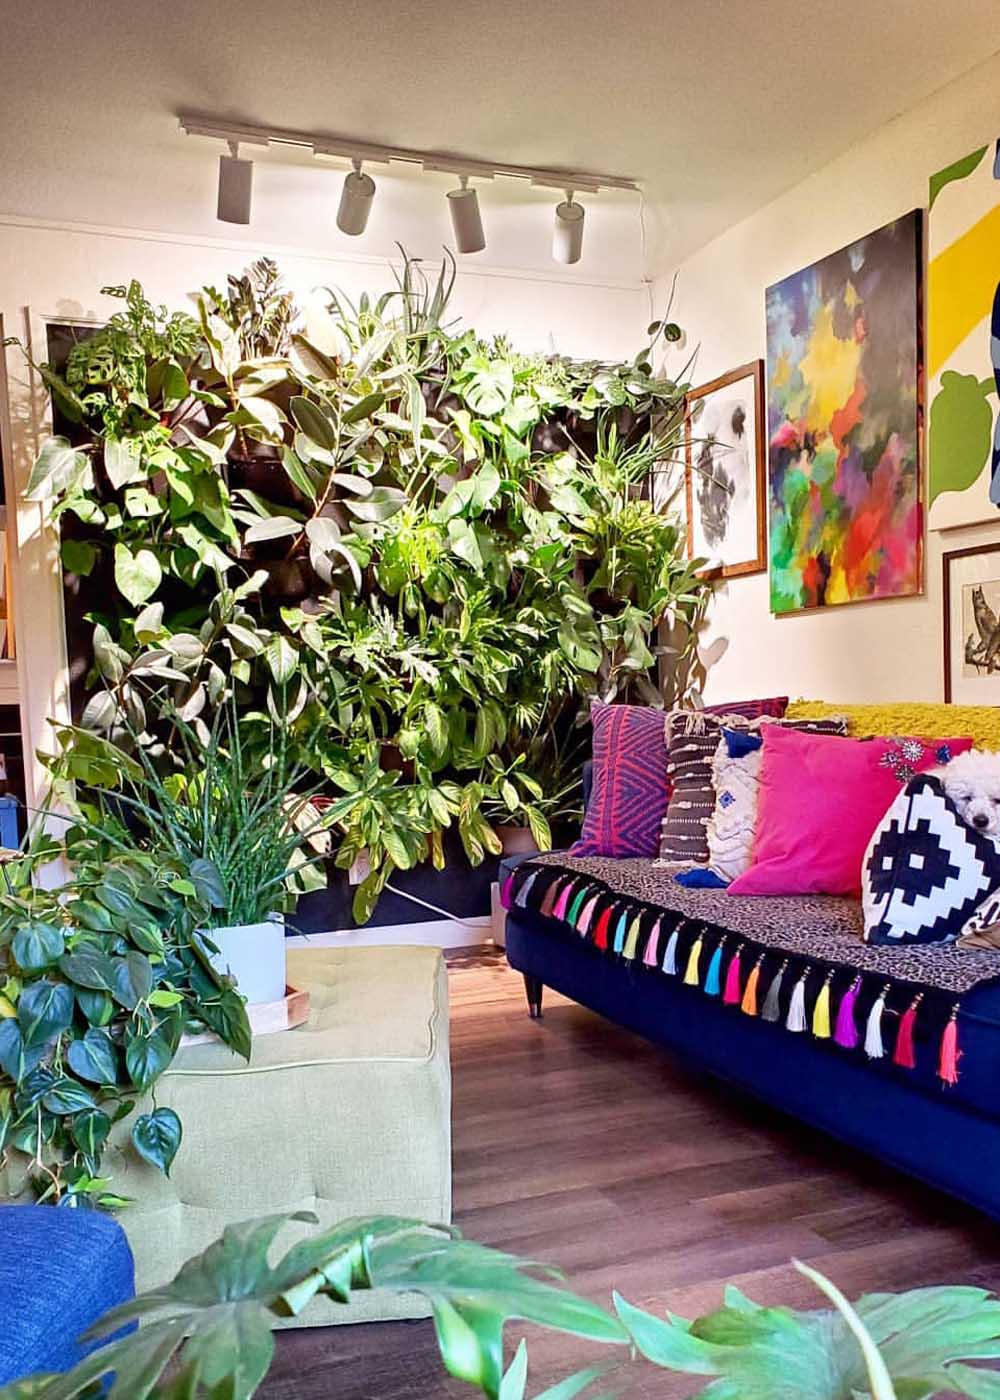 Pflanzenwand hinter einem violetten Sofa mit farbigen Kissen und einem bezogenen Couchtisch, auf dem ebenfalls Pflanzen stehen